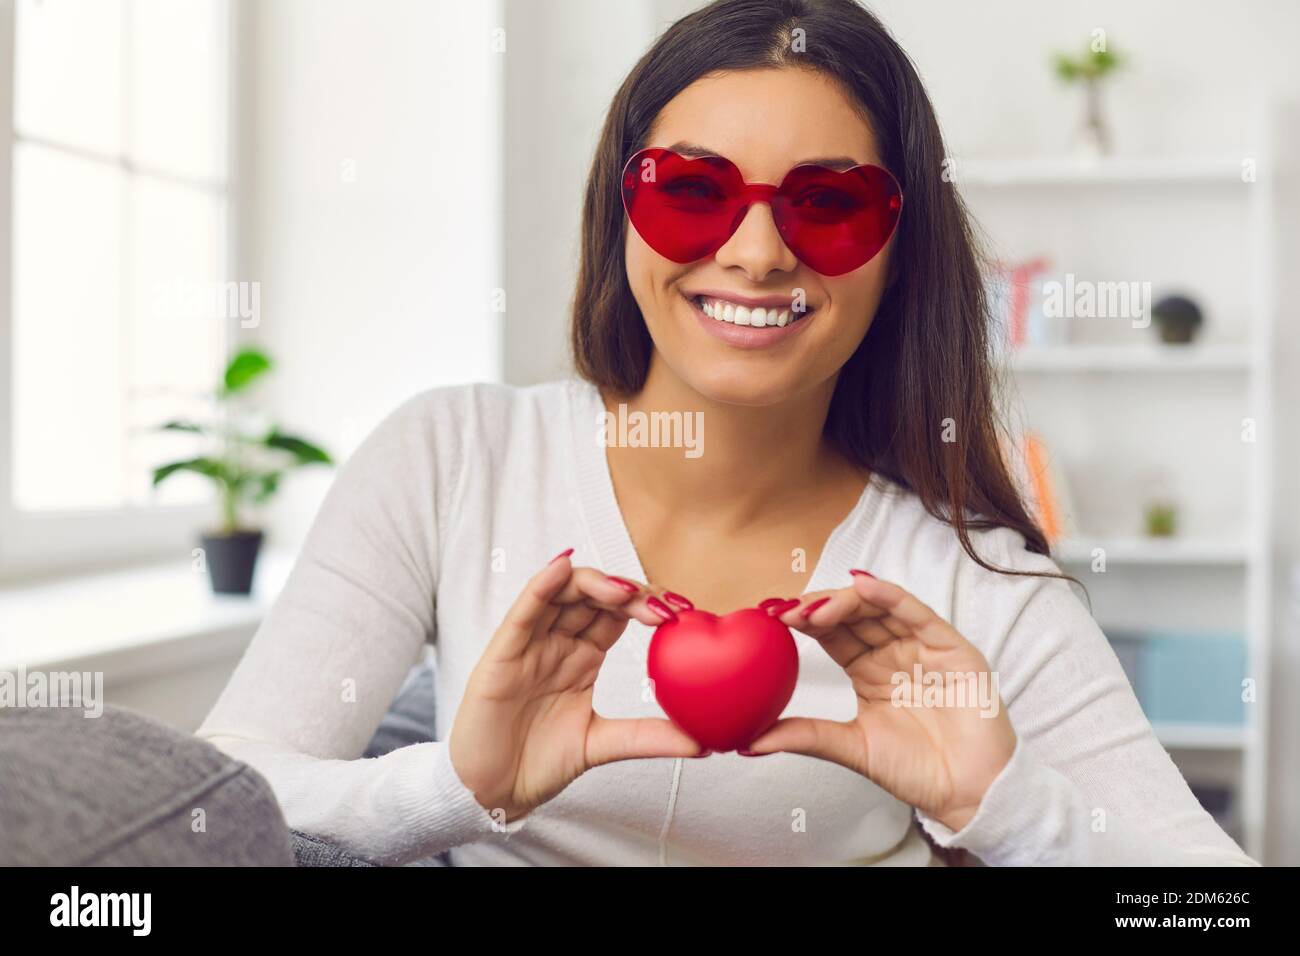 Dankbare Frau, die ein rotes Herz vor der Kamera hält, um ihrem Publikum Dankbarkeit auszudrücken. Stockfoto